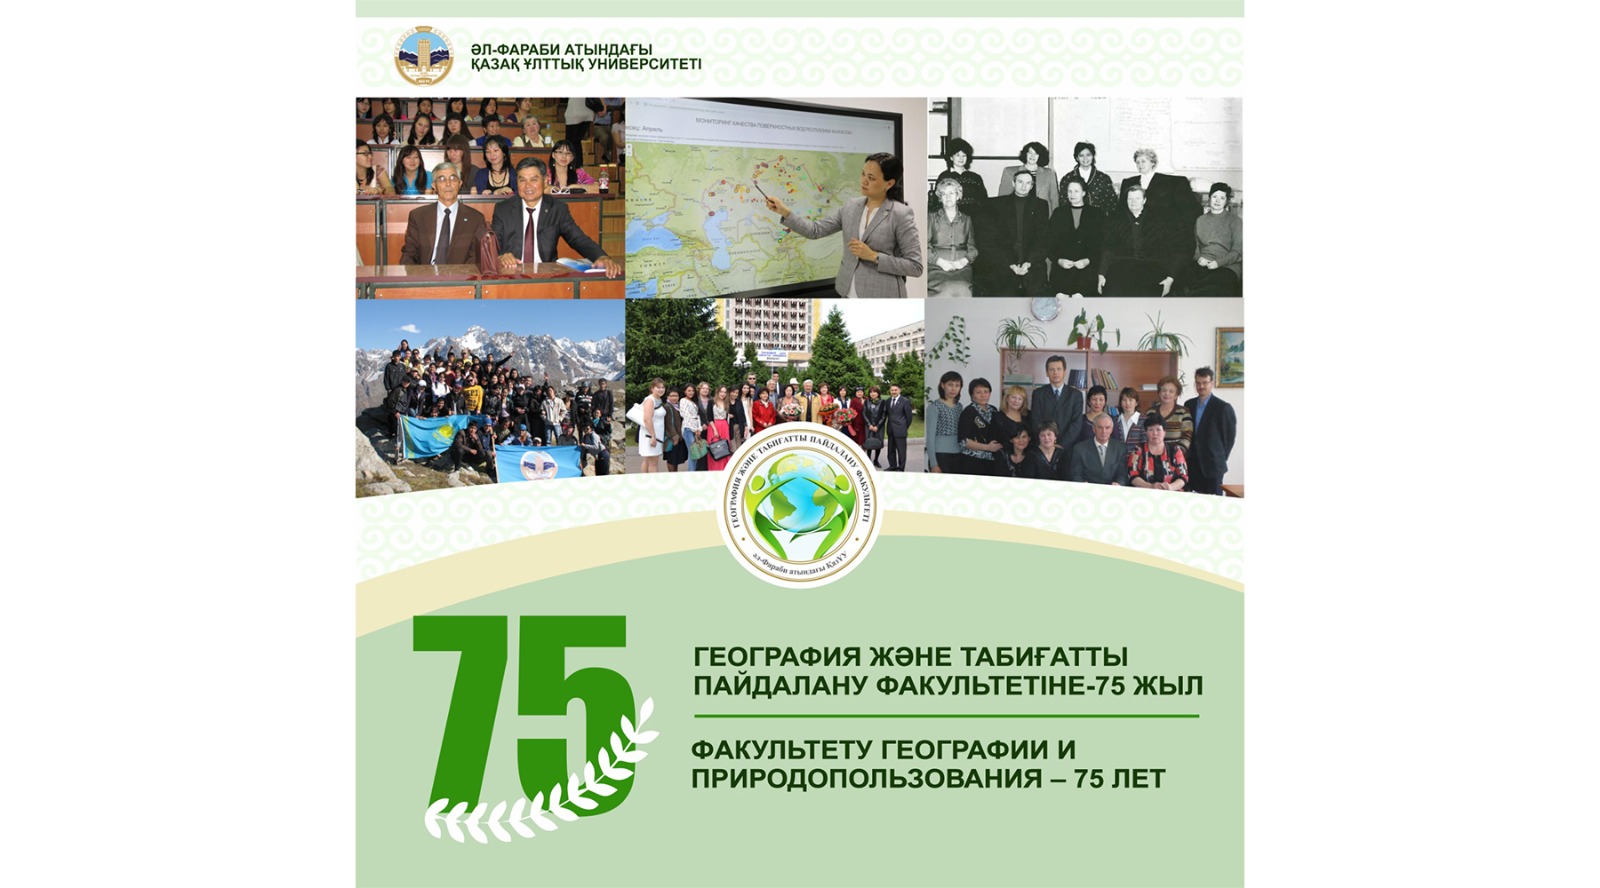 Факультету географии и природопользования – 75 лет